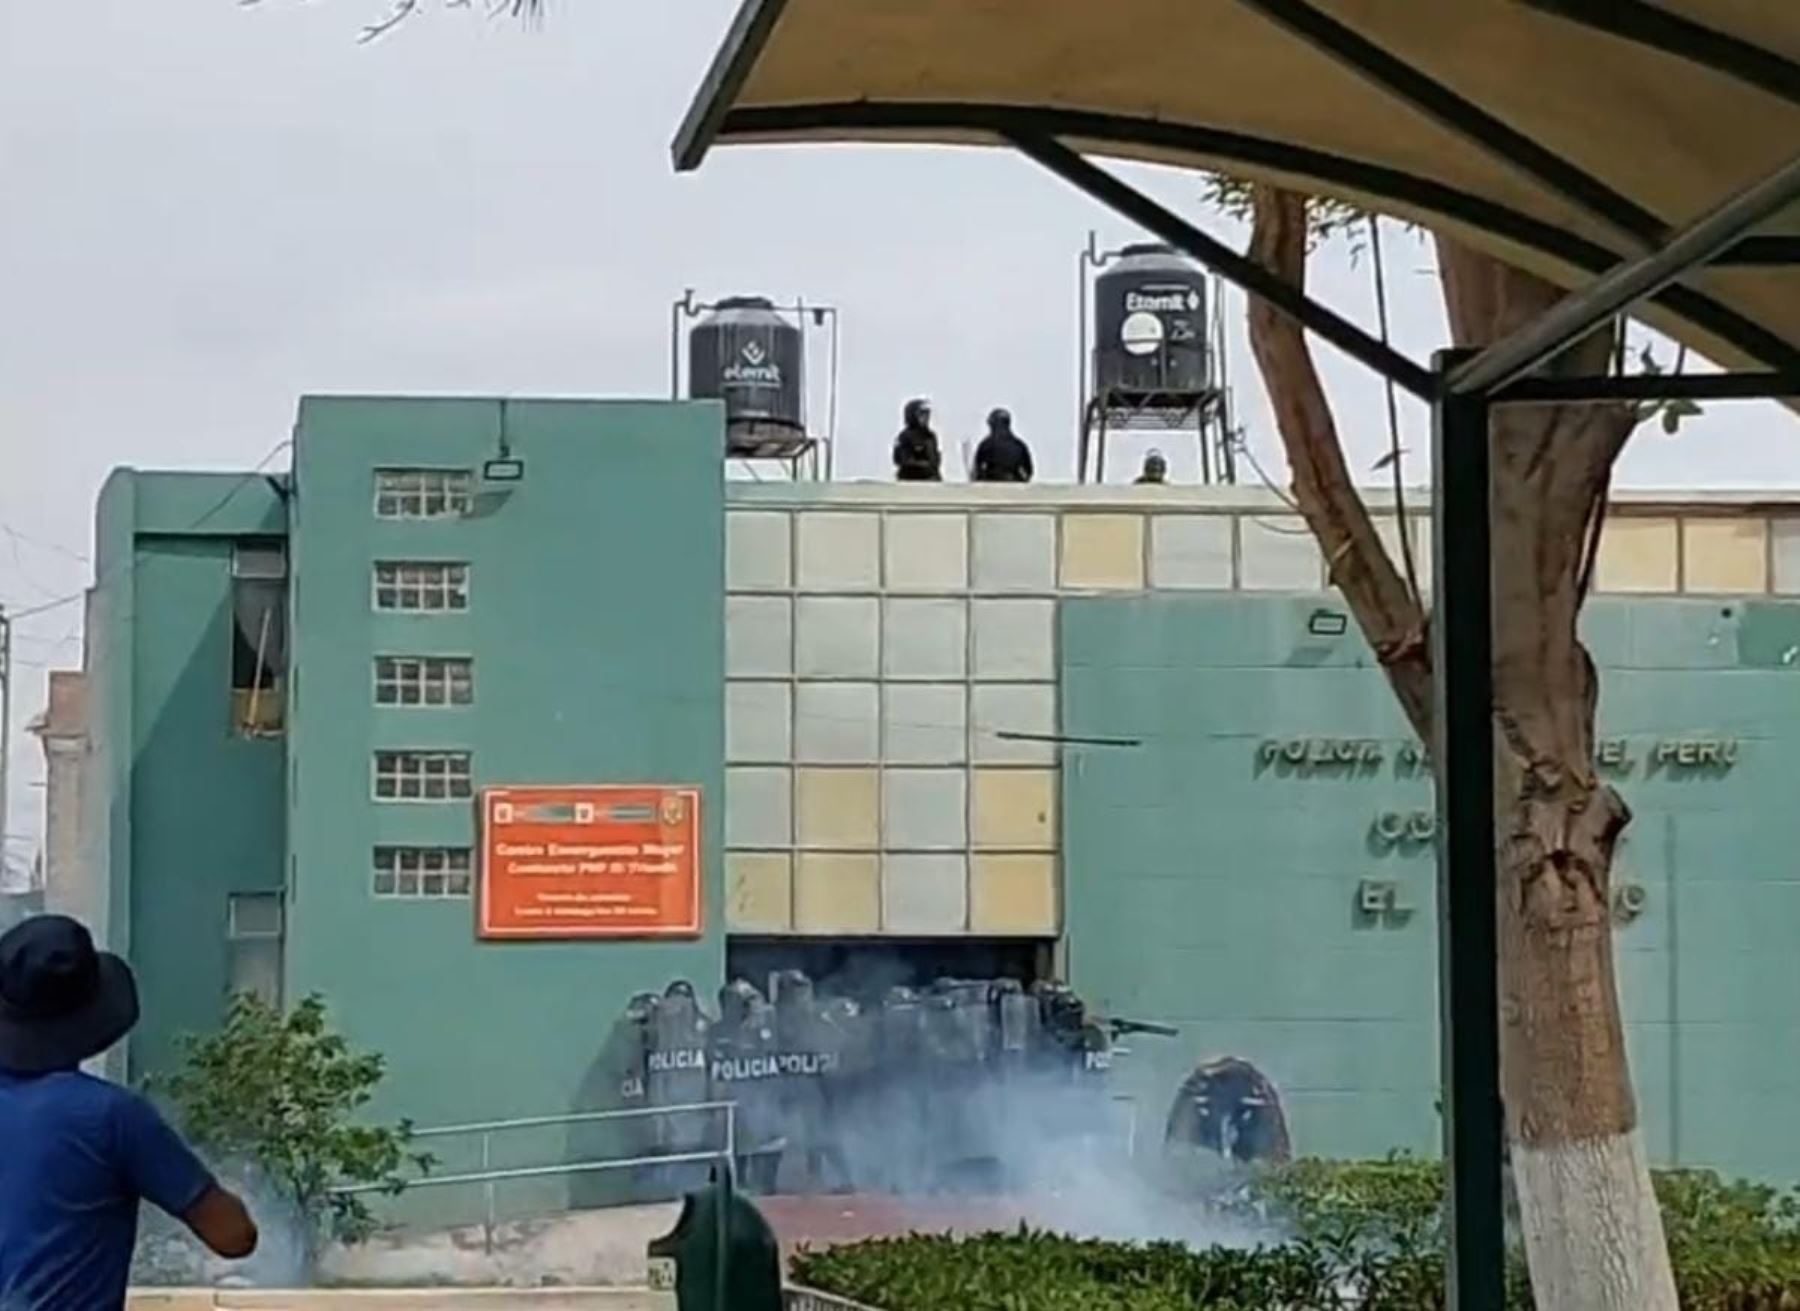 La comisaría El Triunfo, situada en el distrito de La Joya, en Arequipa, fue atacada por vándalos que luego tomaron como rehén a un policía. Foto: Captura TV